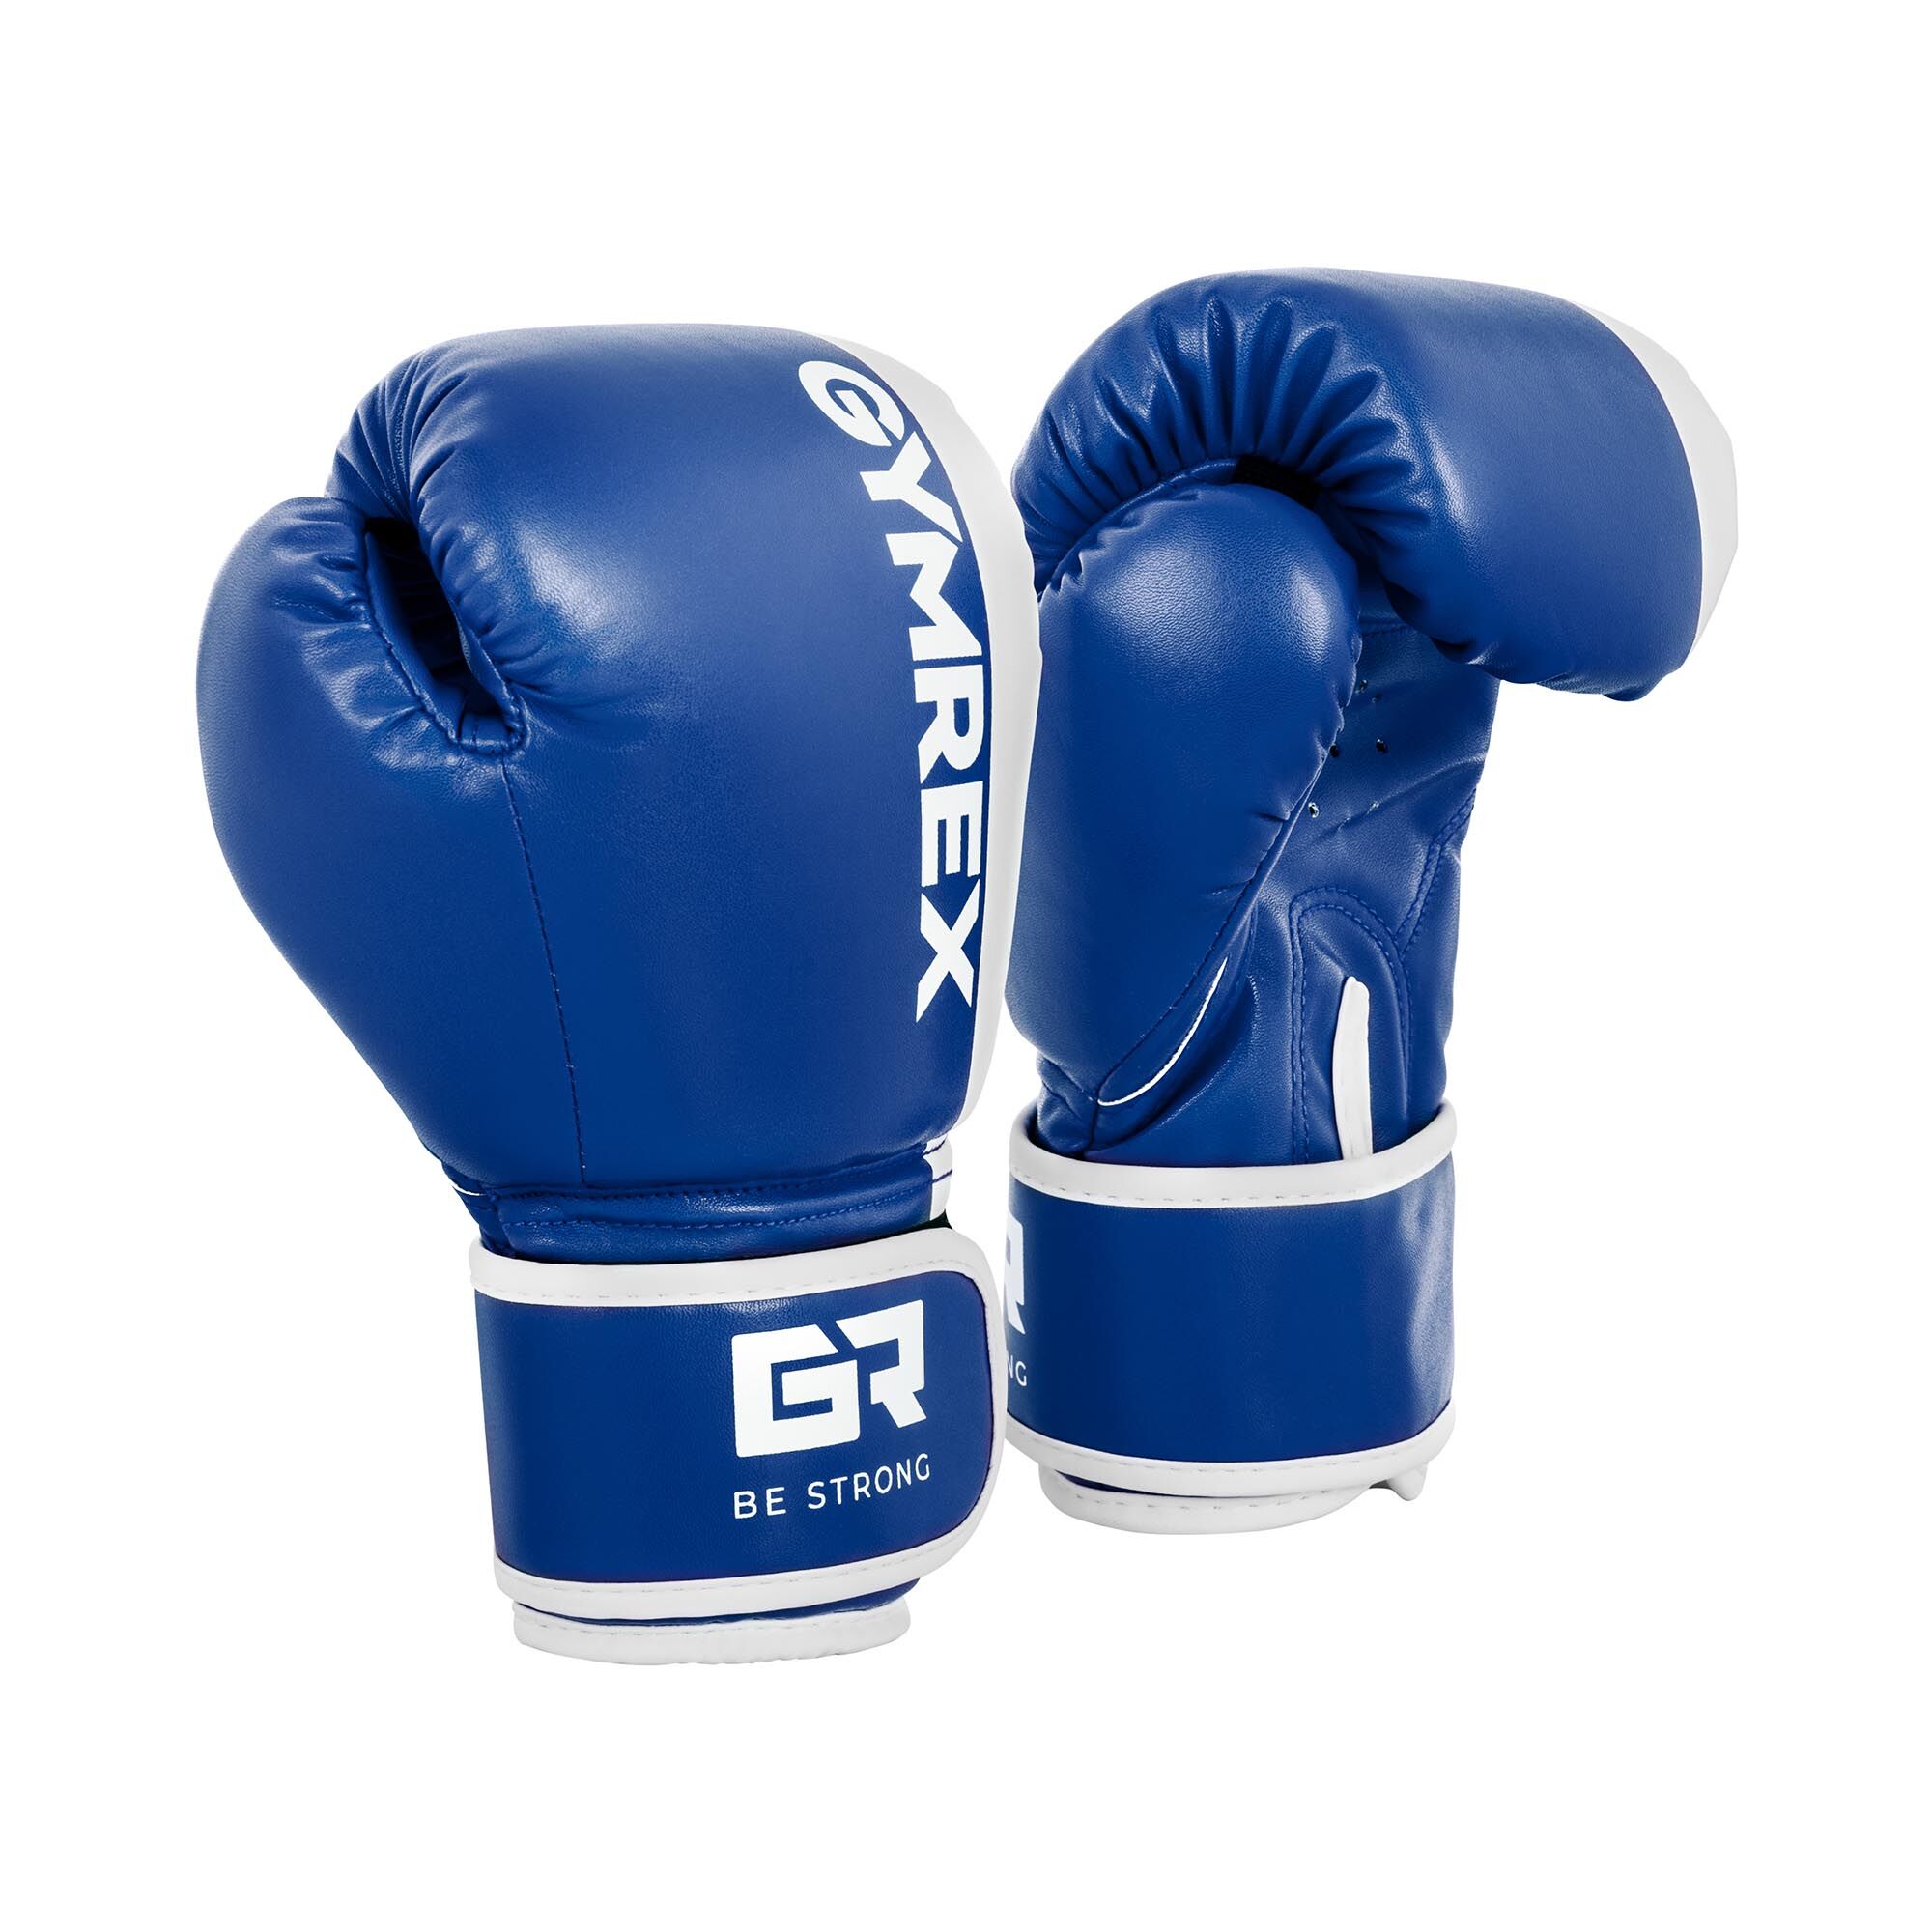 Gymrex Dětské boxerské rukavice - 6 oz - modrobílé GR-BG 6P